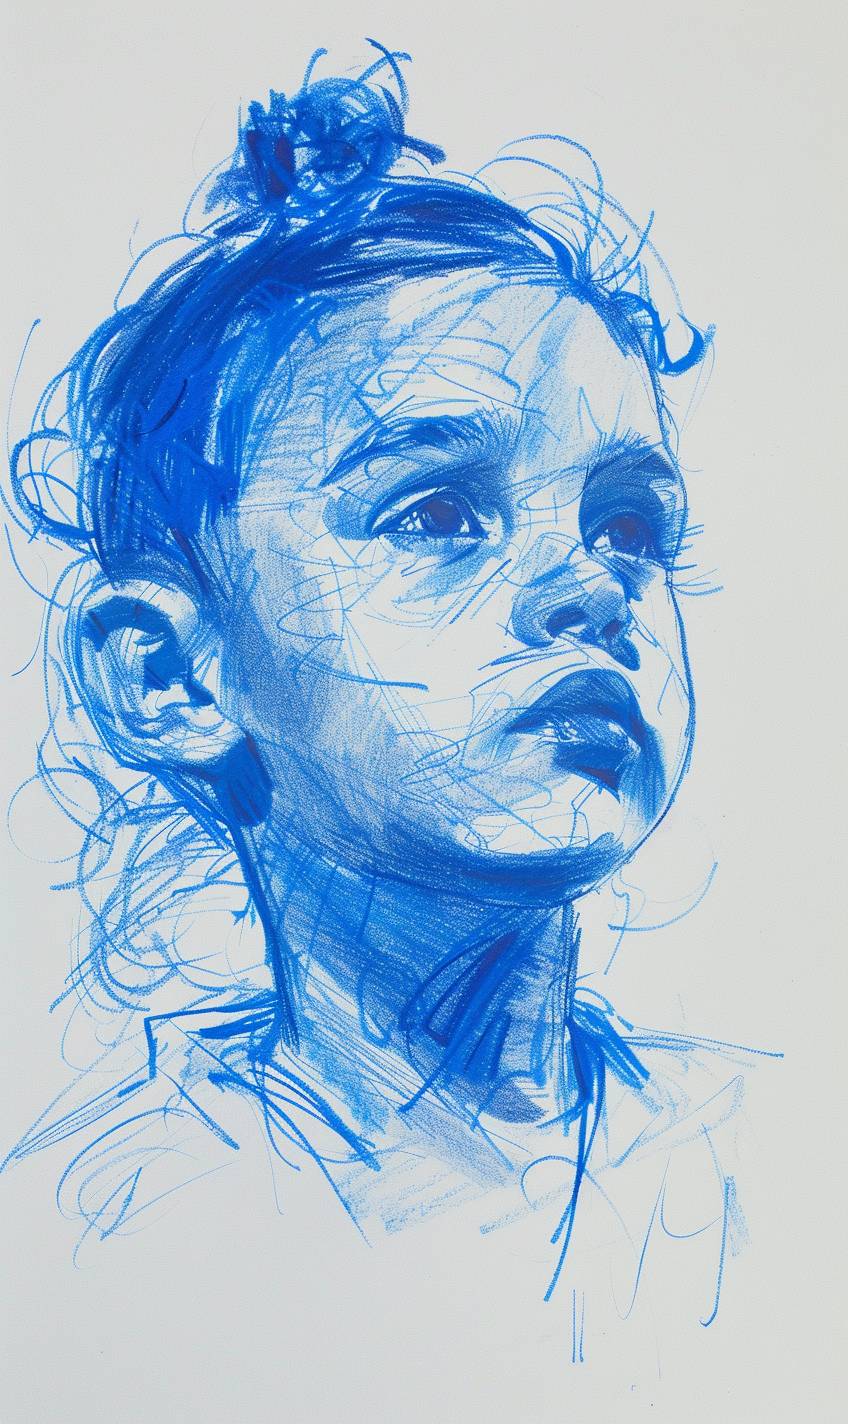 パステルマーカーのスタイルで描かれた子供の絵、奇抜なキャラクターデザイン、パステルオイル、微妙なトーン、キュートコア、青色